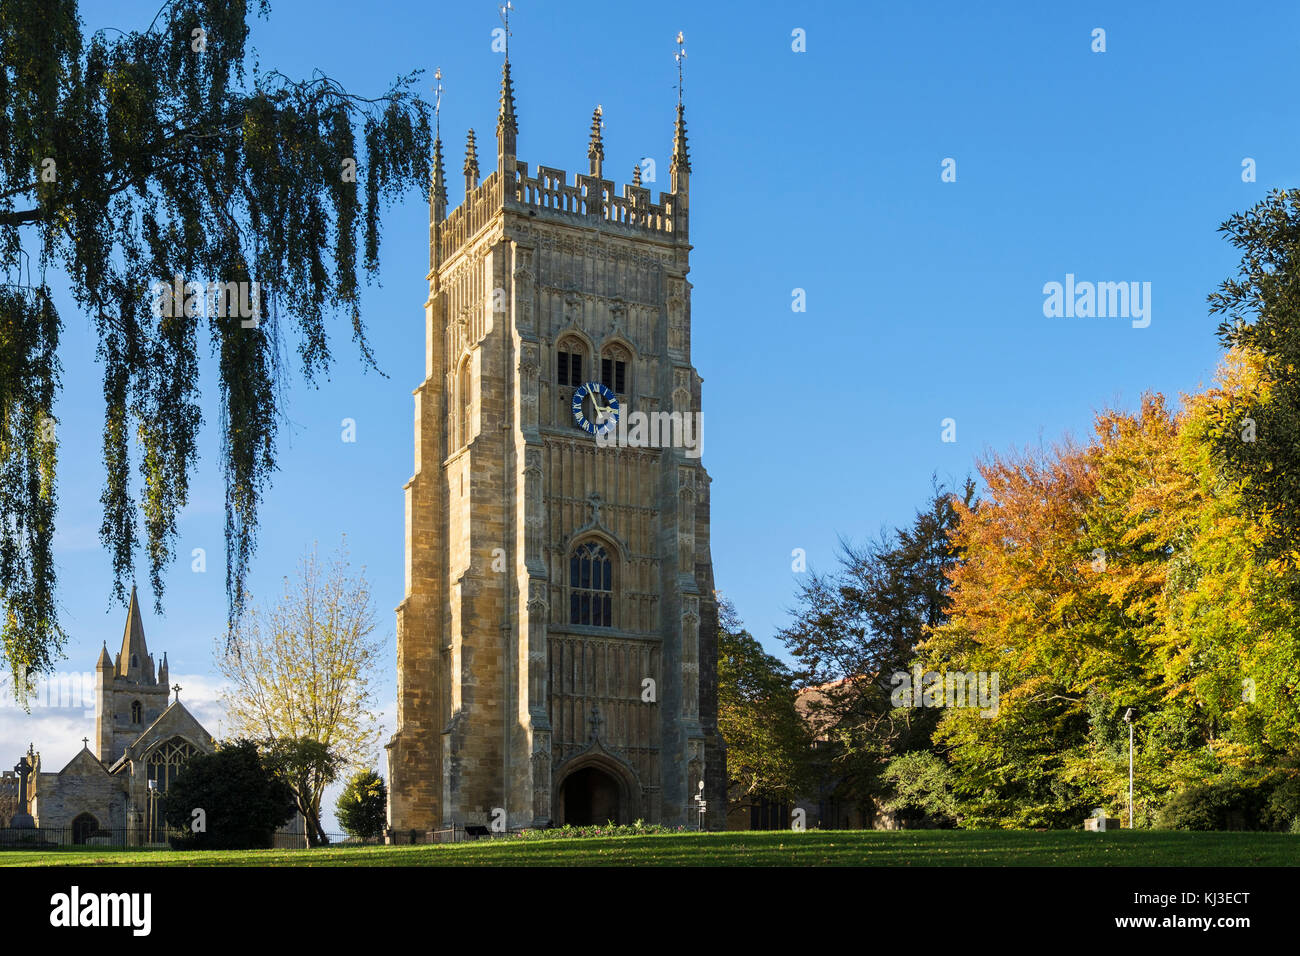 L'ancienne abbaye et le clocher de l'église Saint-Laurent à Abbey Park dans la ville des Cotswolds. Evesham, Worcestershire, Angleterre, Royaume-Uni, Angleterre Banque D'Images